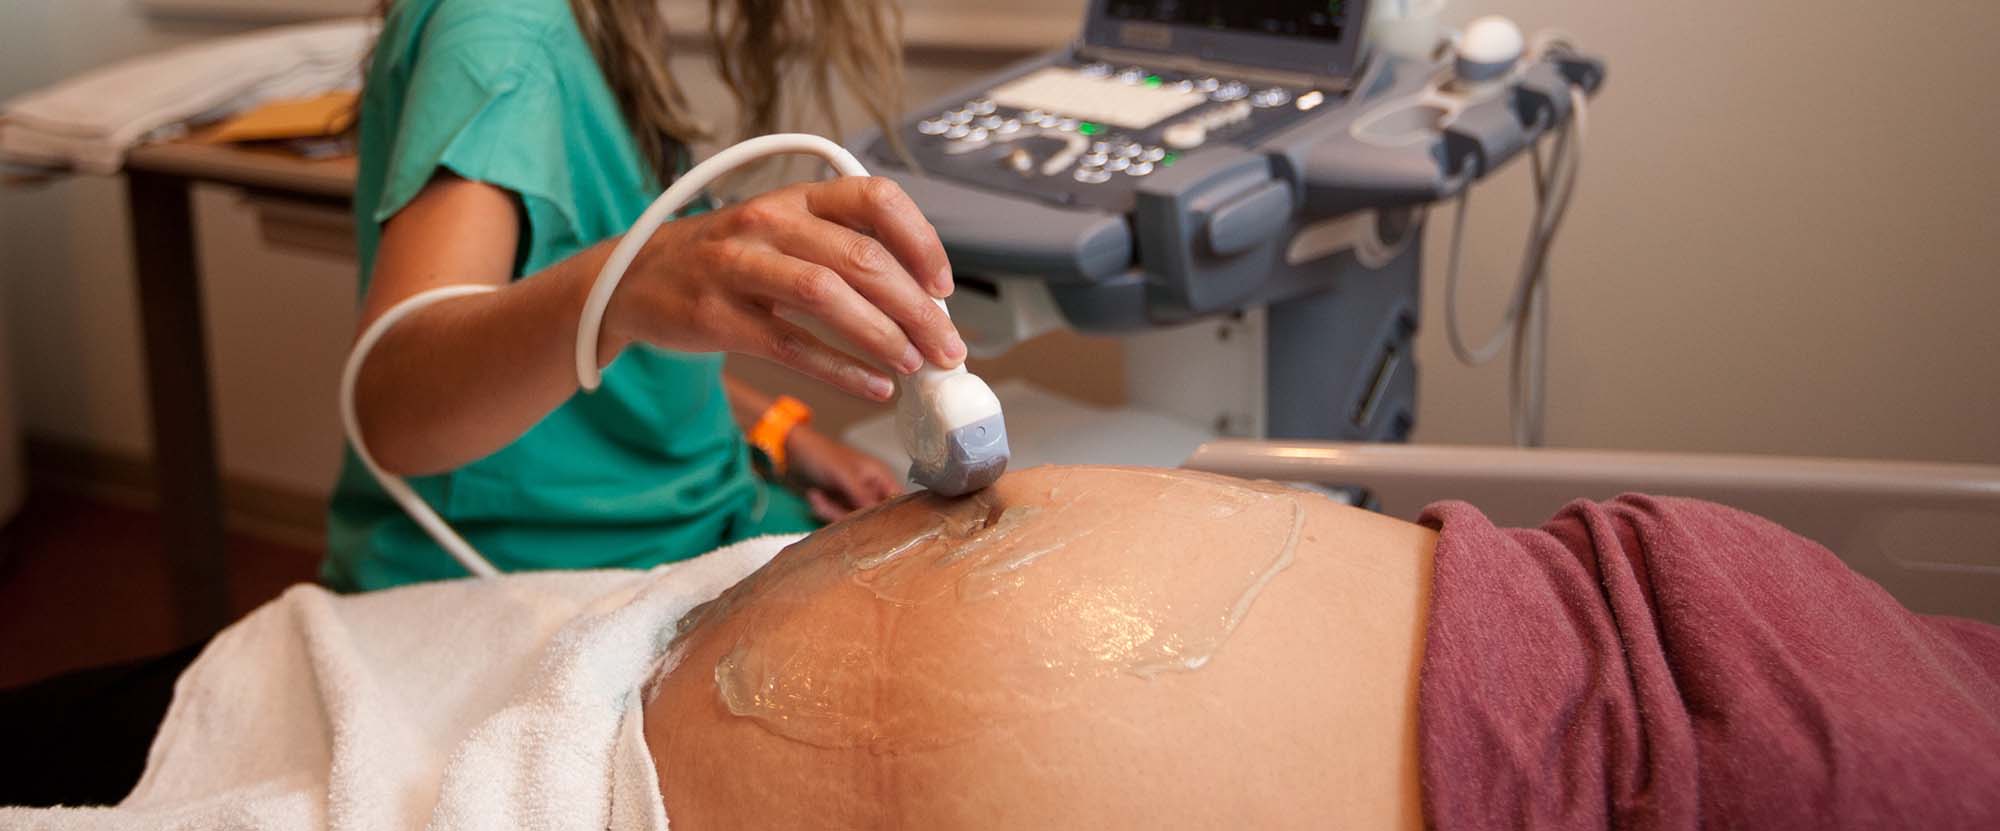 Una madre incinta che si sottopone a un'ecografia